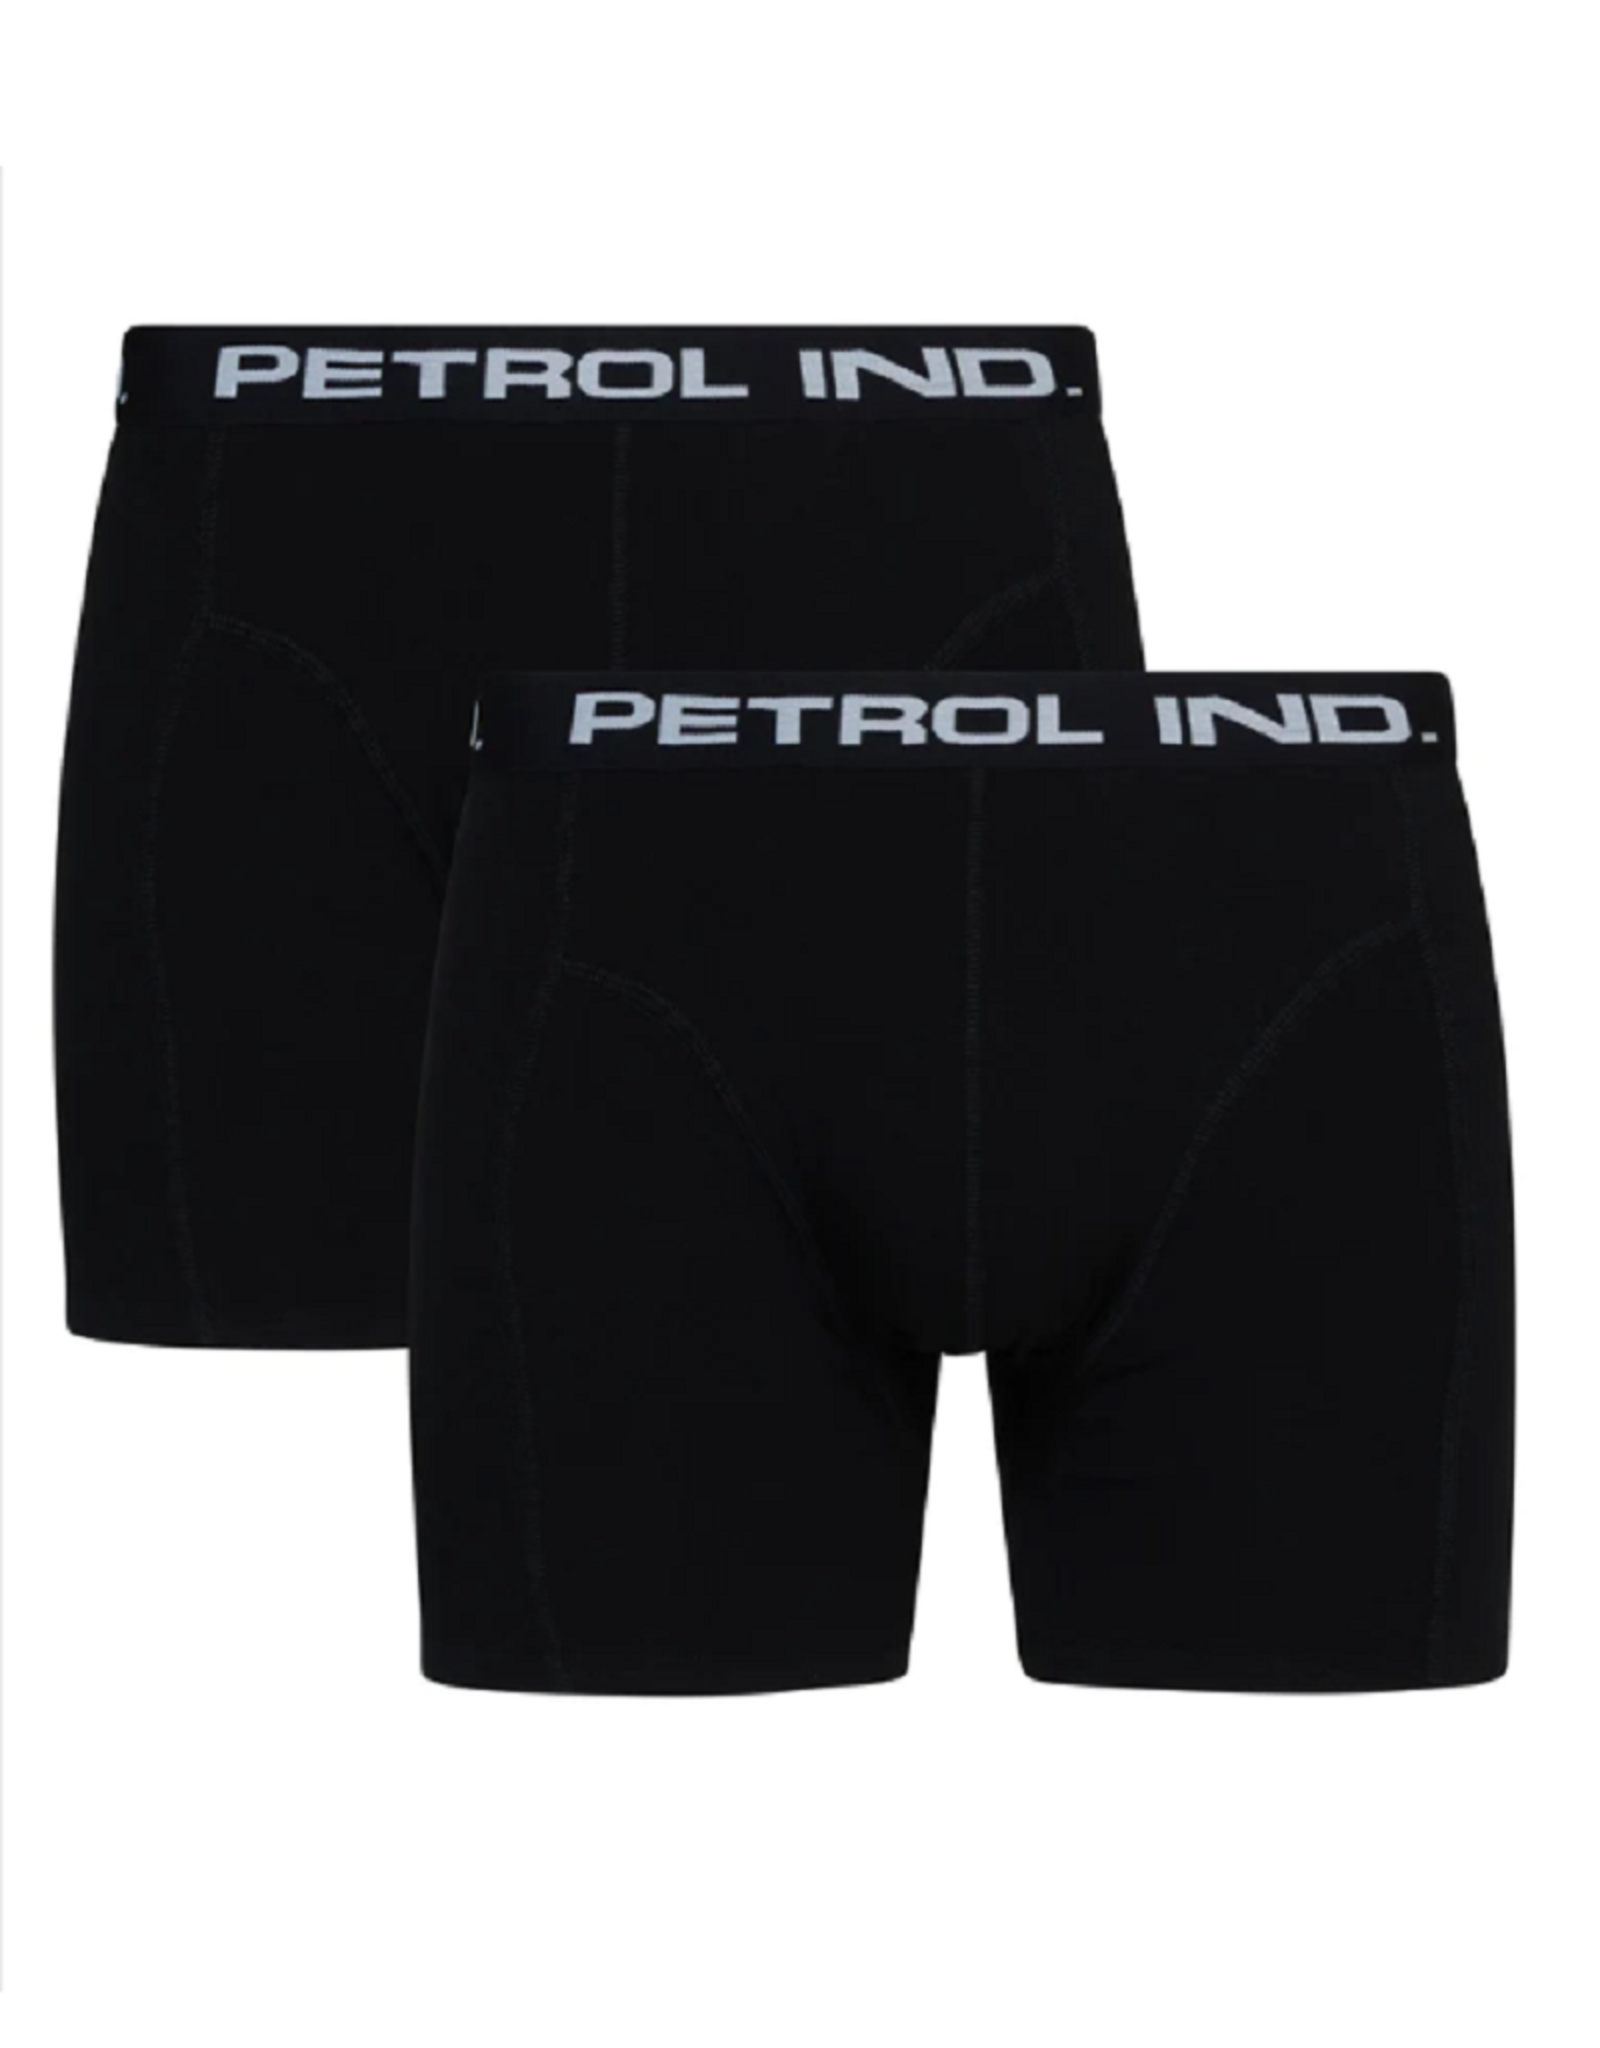 Petrol Ind. Petrol  Industries boxershorts 2-pack black